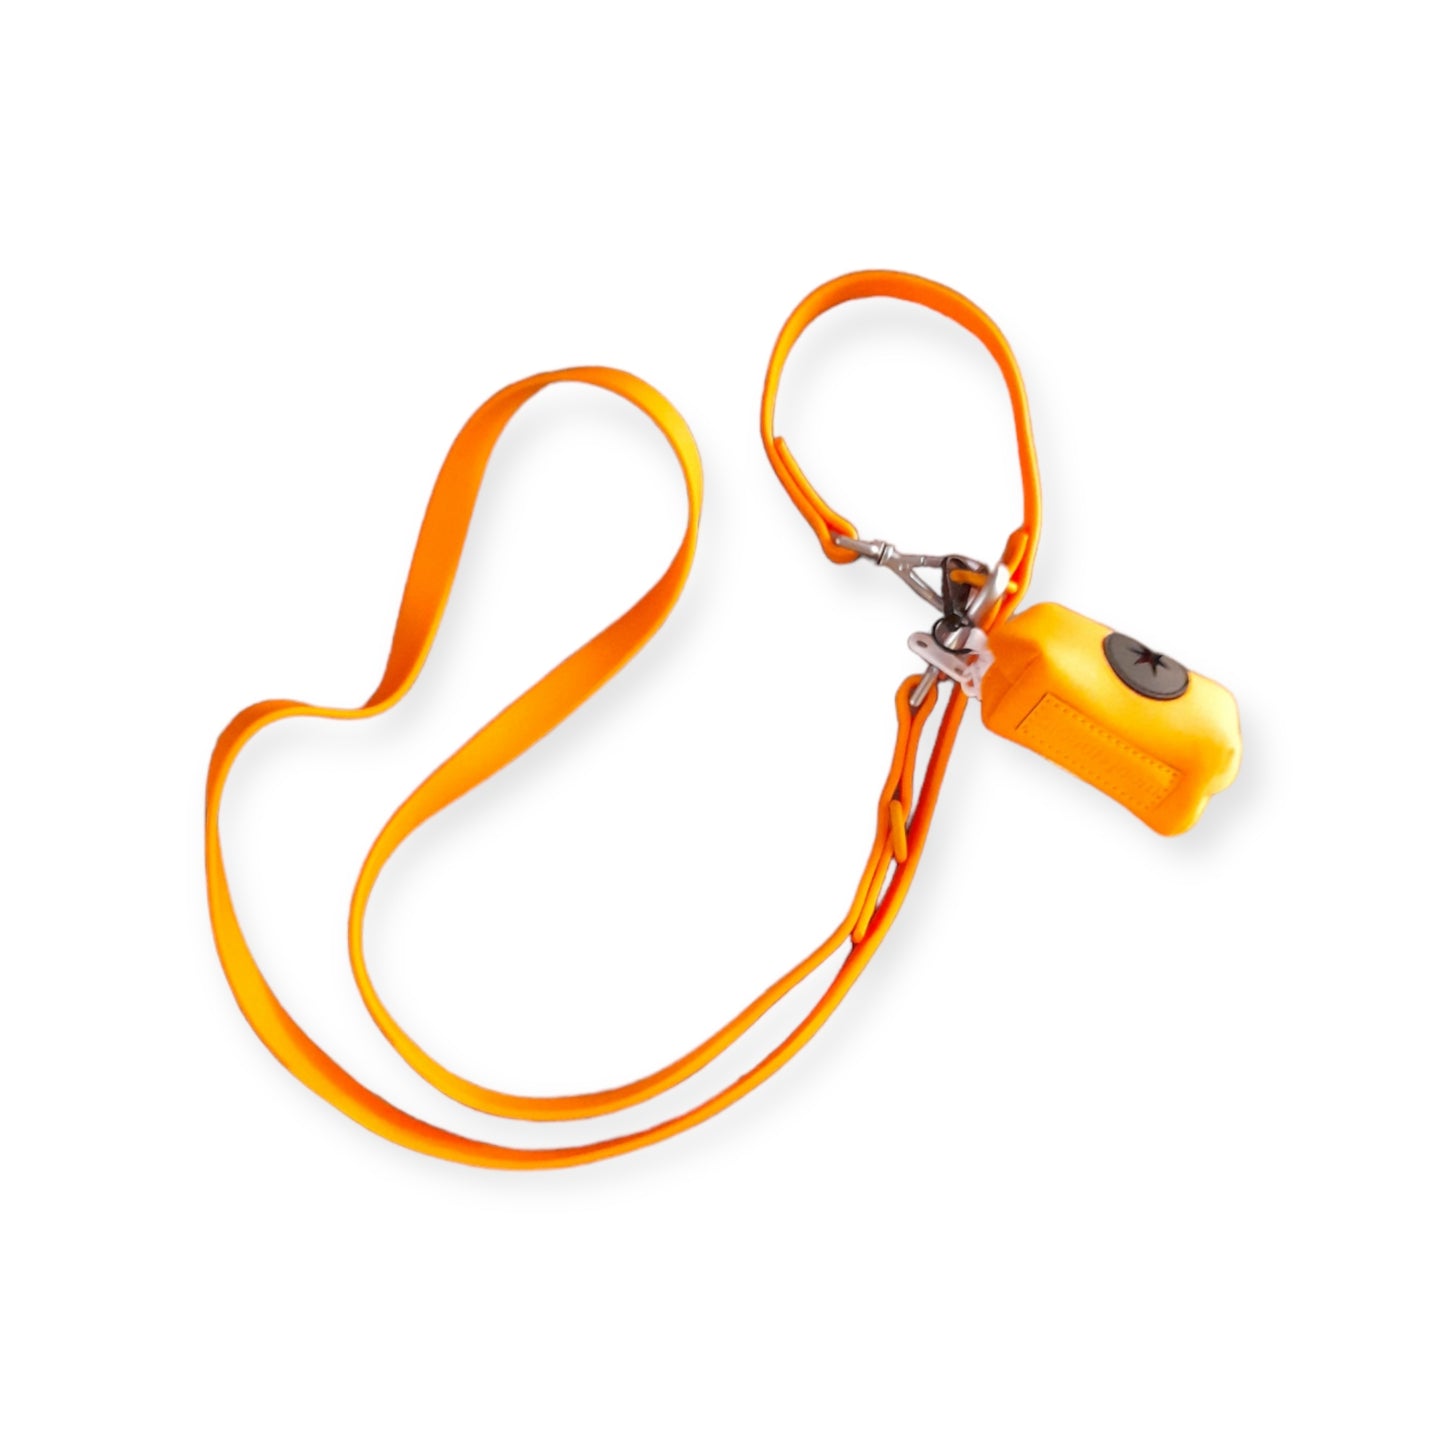 Woof Magic 高品質PVC防水寵物牽繩搭配專屬Poo Bag PVC Double Hooks Leash and Poo Bag Set - Orange